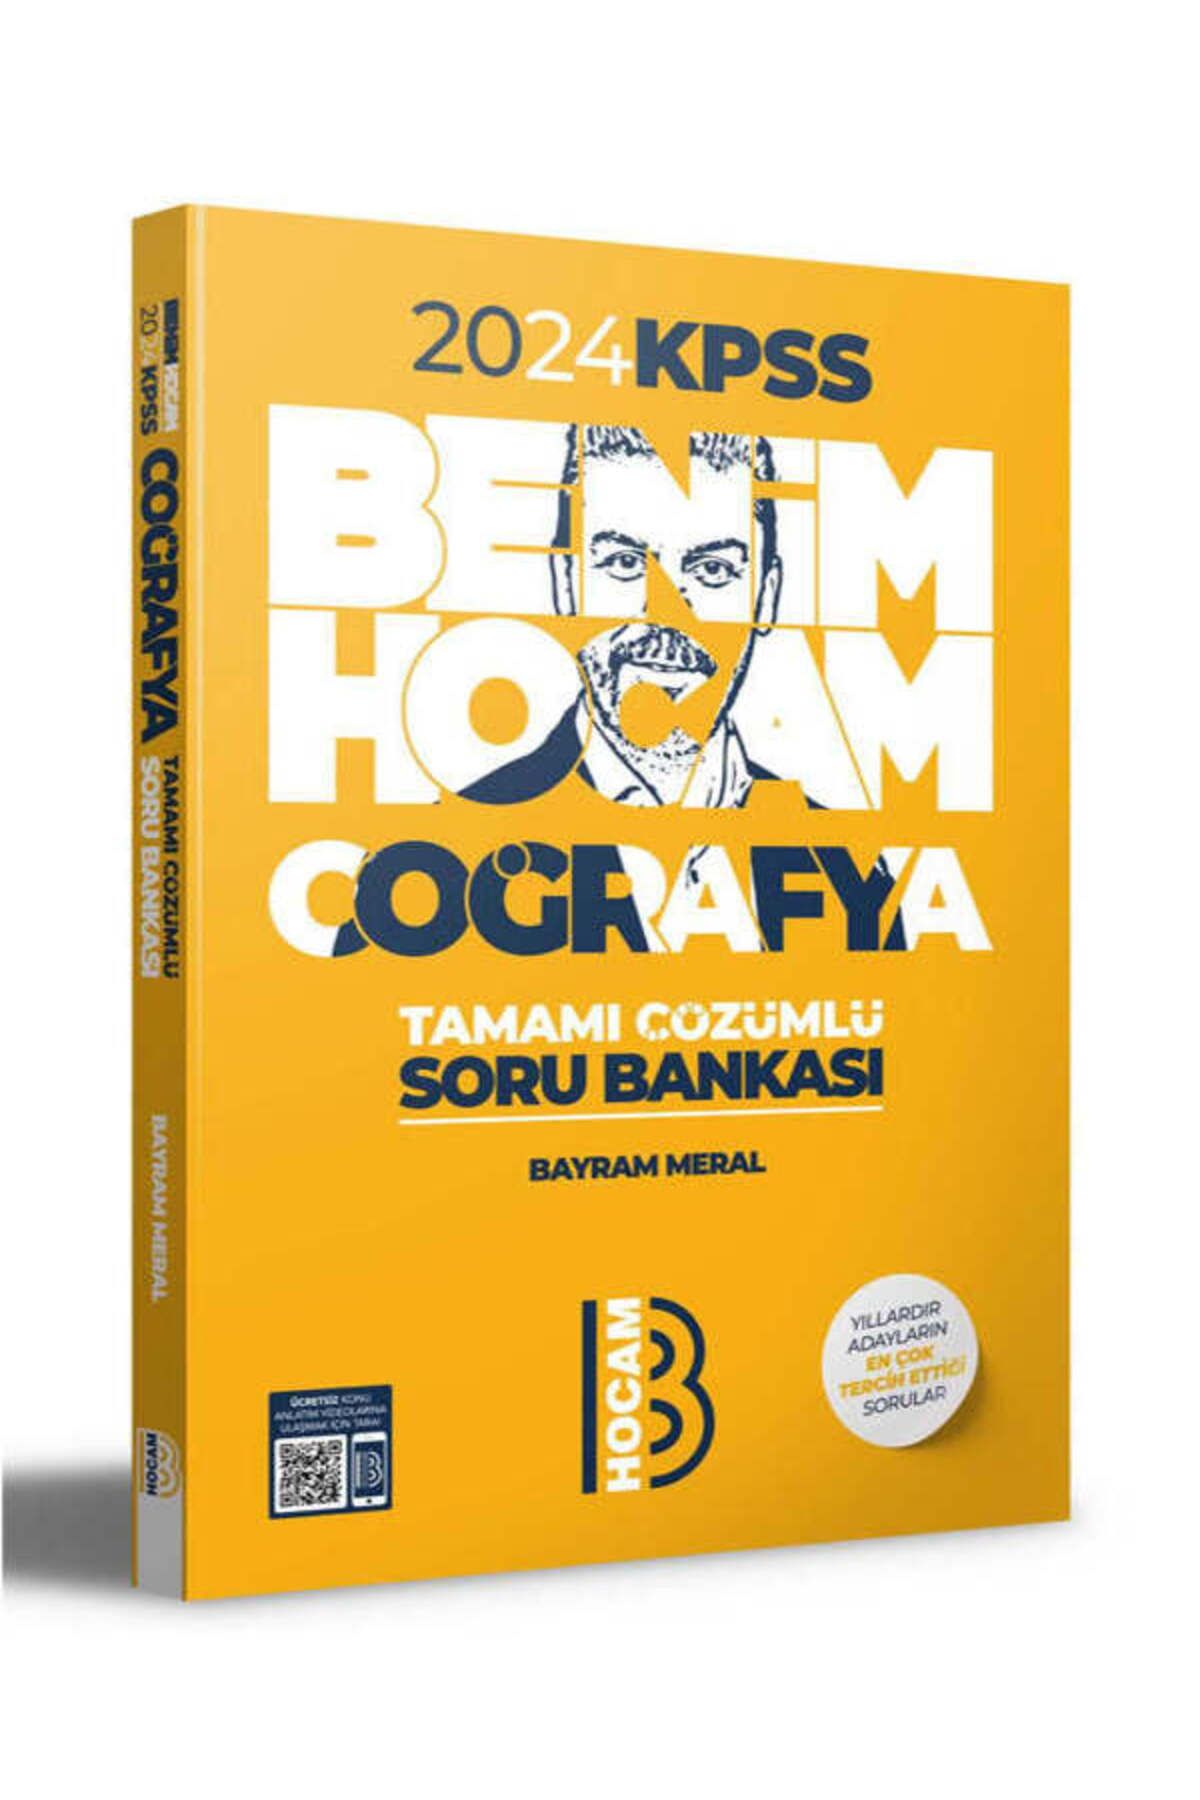 Benim Hocam Yayınları Kpss Coğrafya Tamamı Çözümlü Soru Bankası